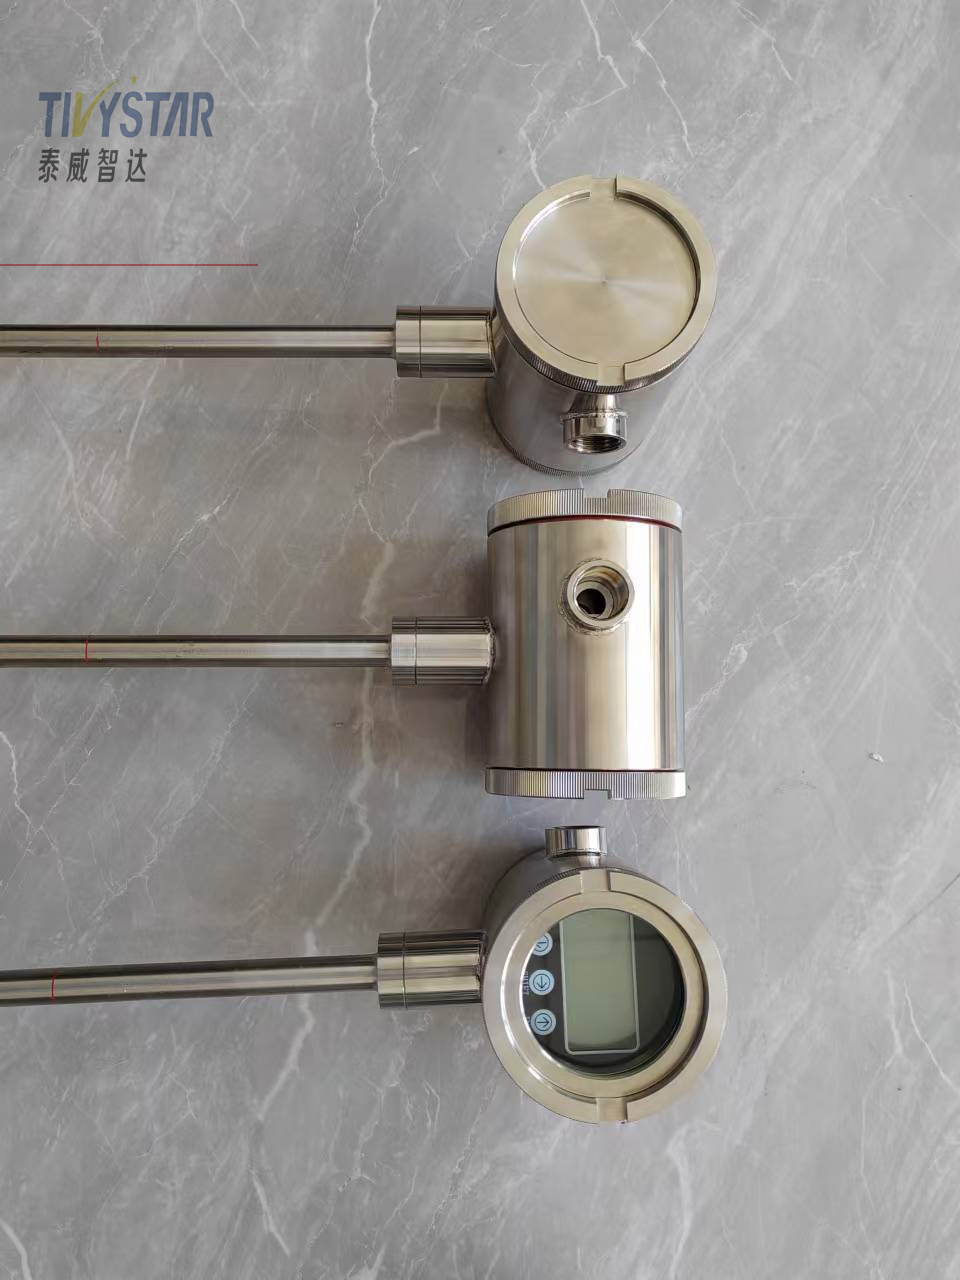 工业型磁致伸缩液位计厂家 不锈钢材质 安装简单图片